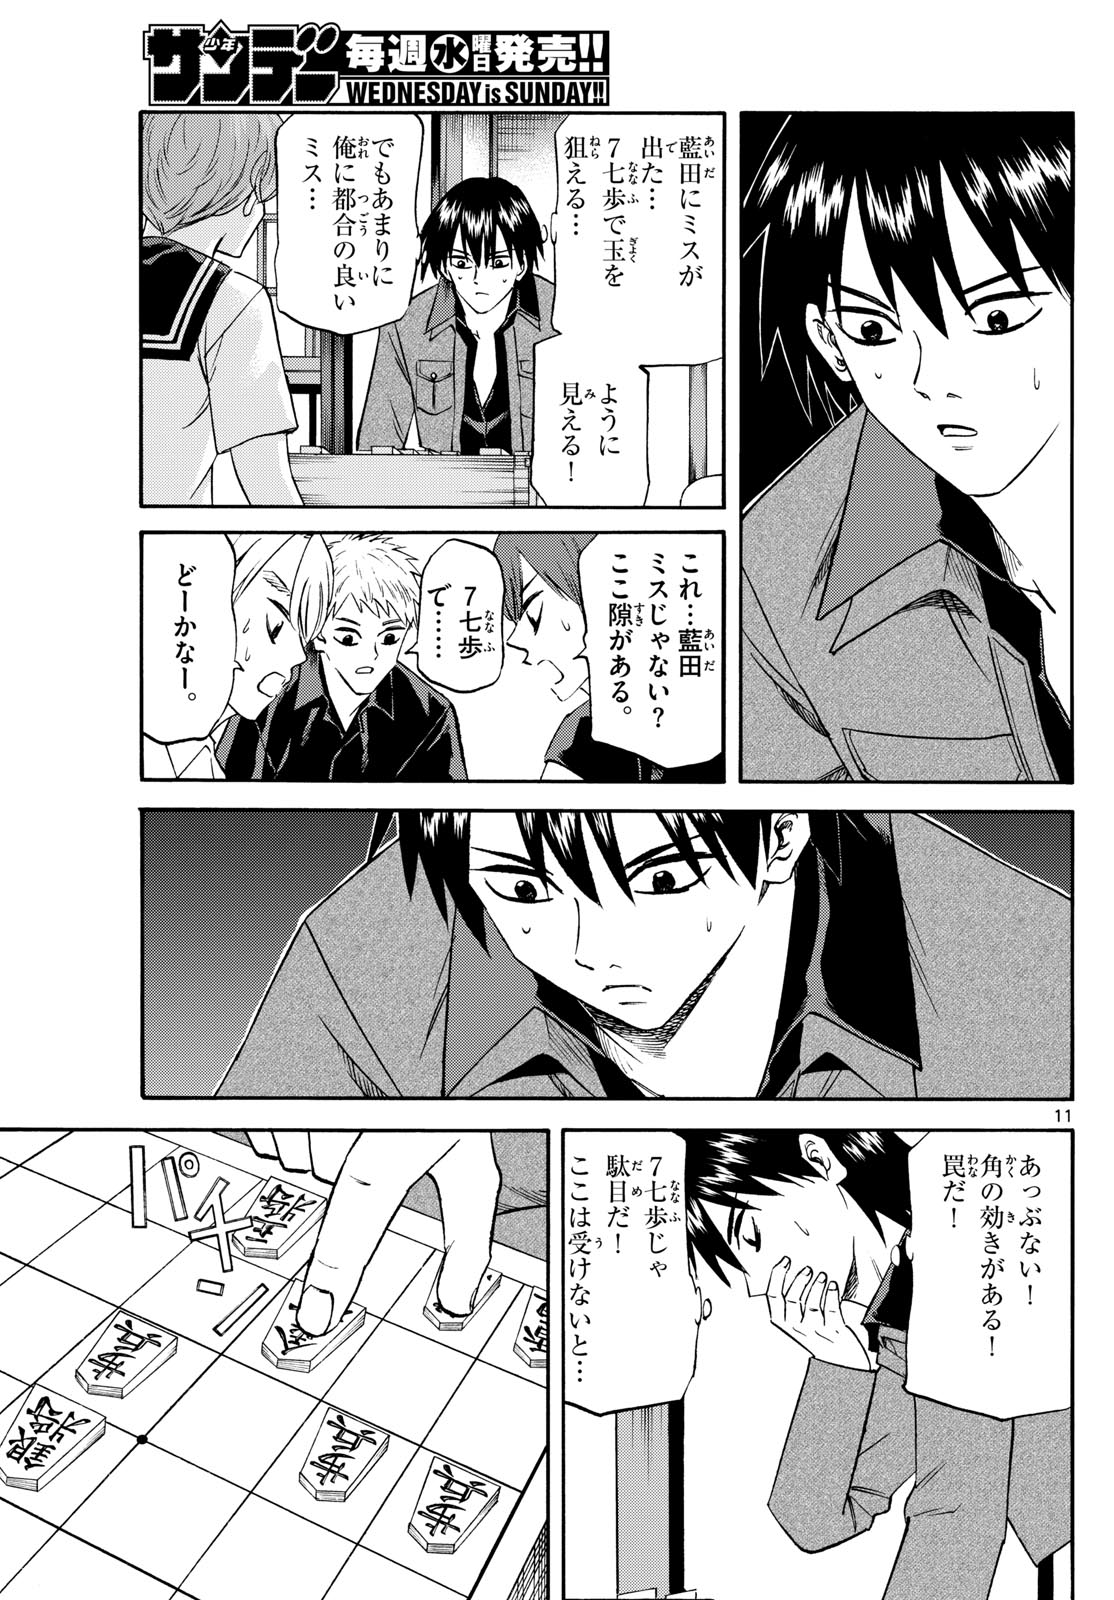 Tatsu to Ichigo - Chapter 194 - Page 11